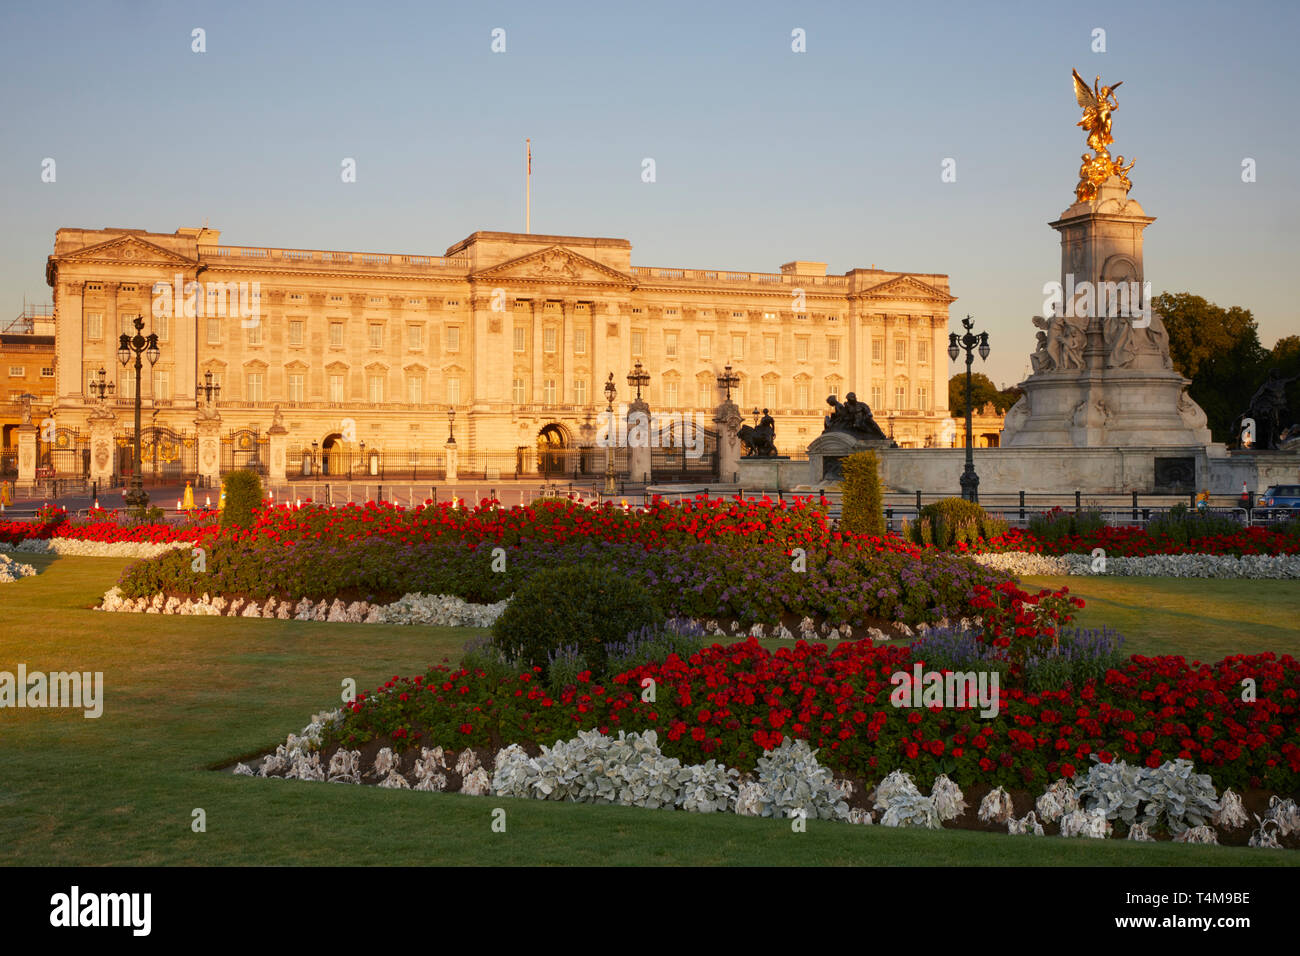 Buckingham Palace, Westminster, London, England, UK Stock Photo